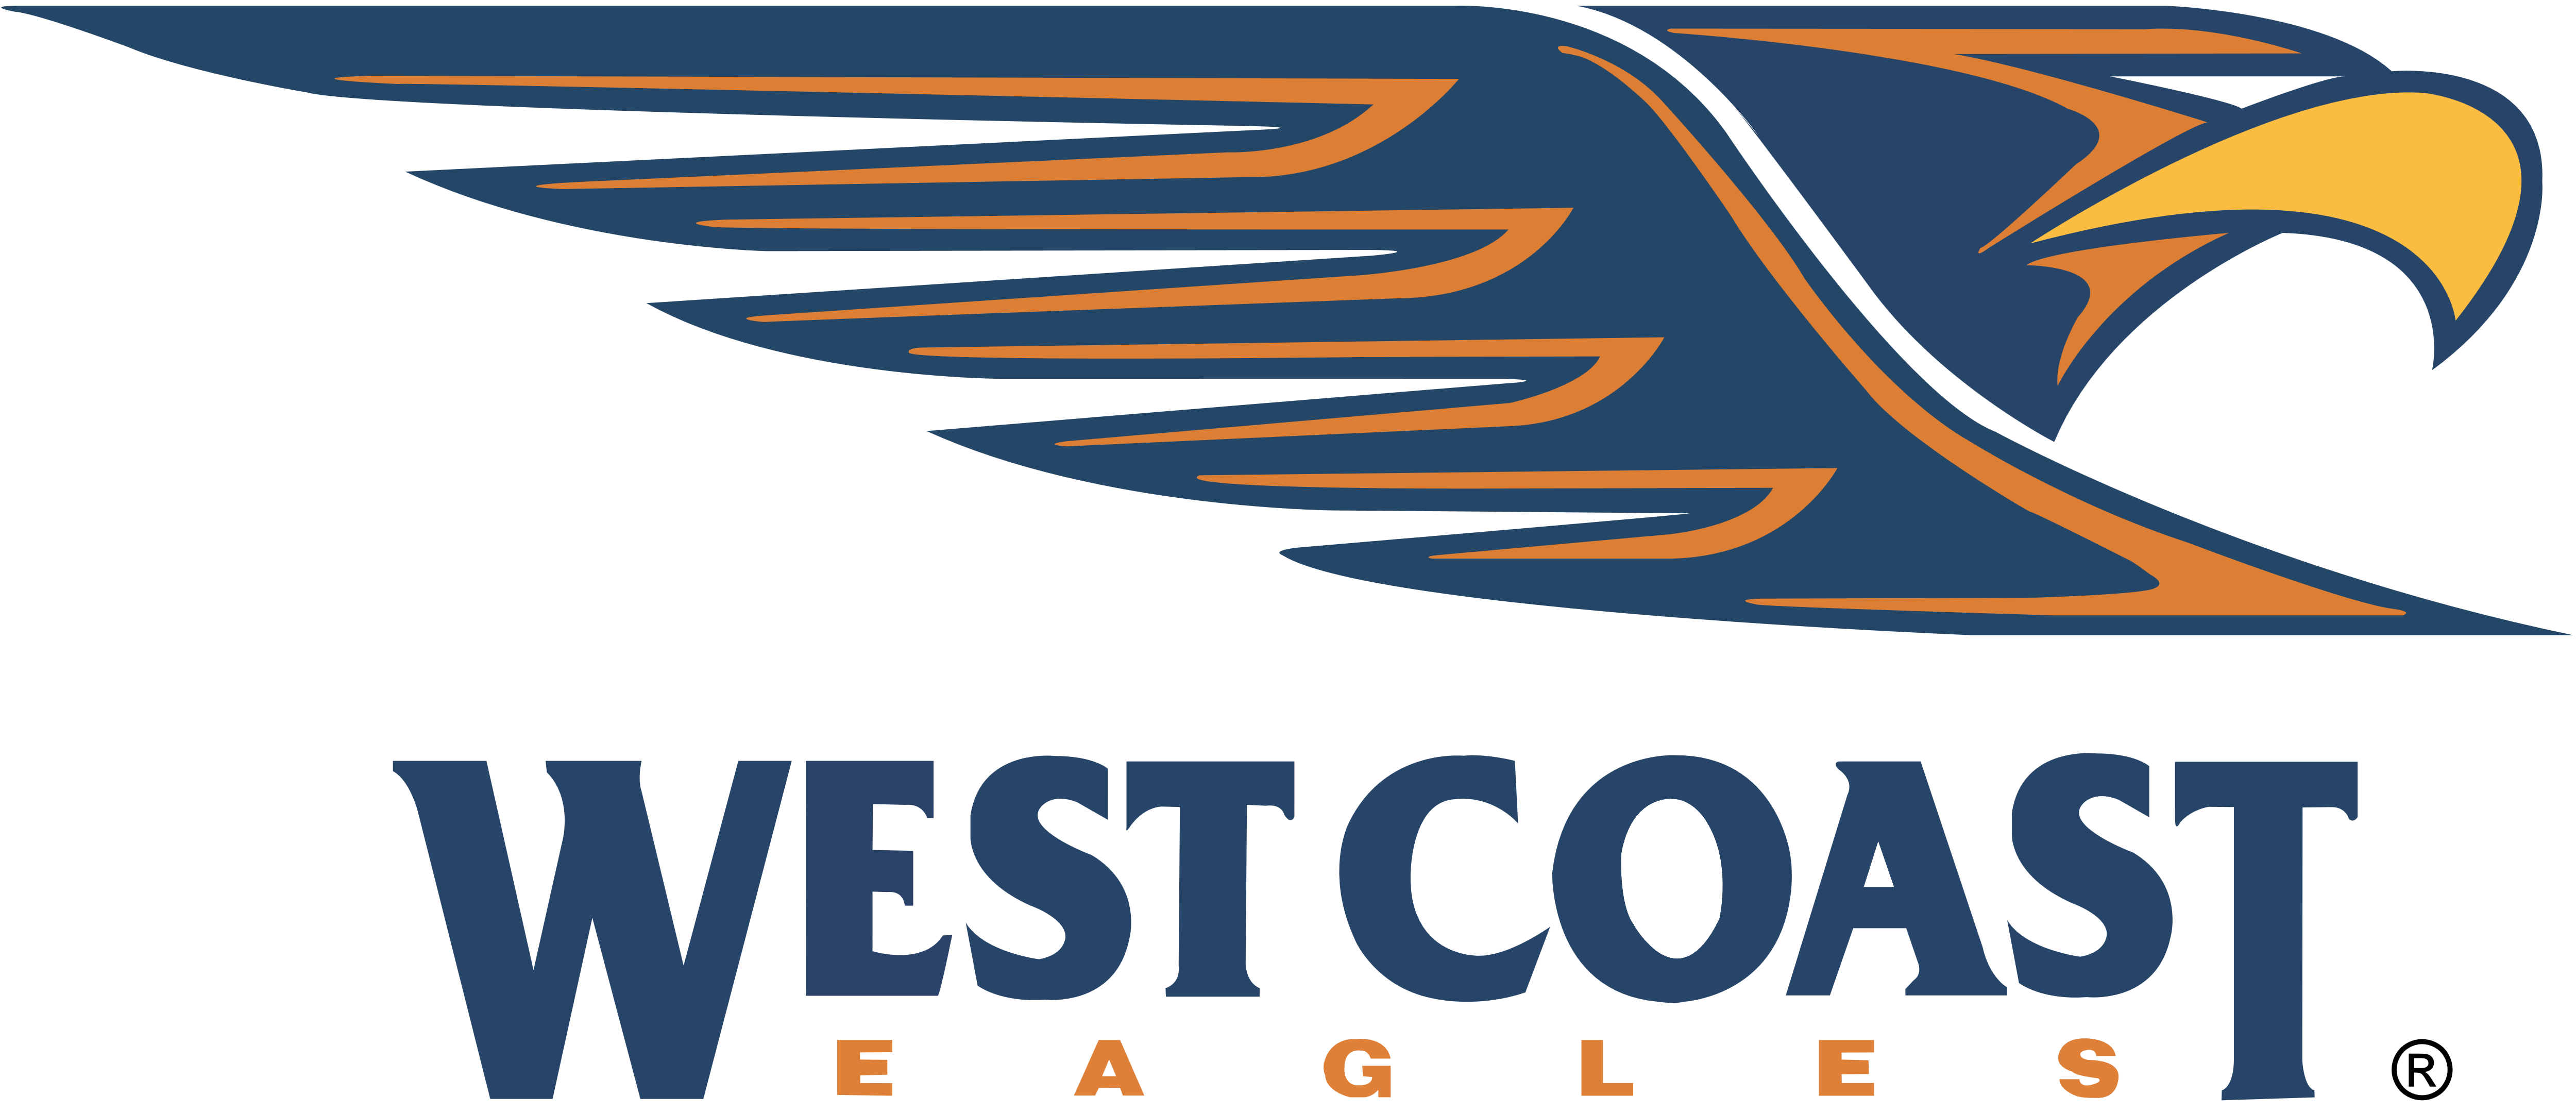 Vector Eagles logo Transparente